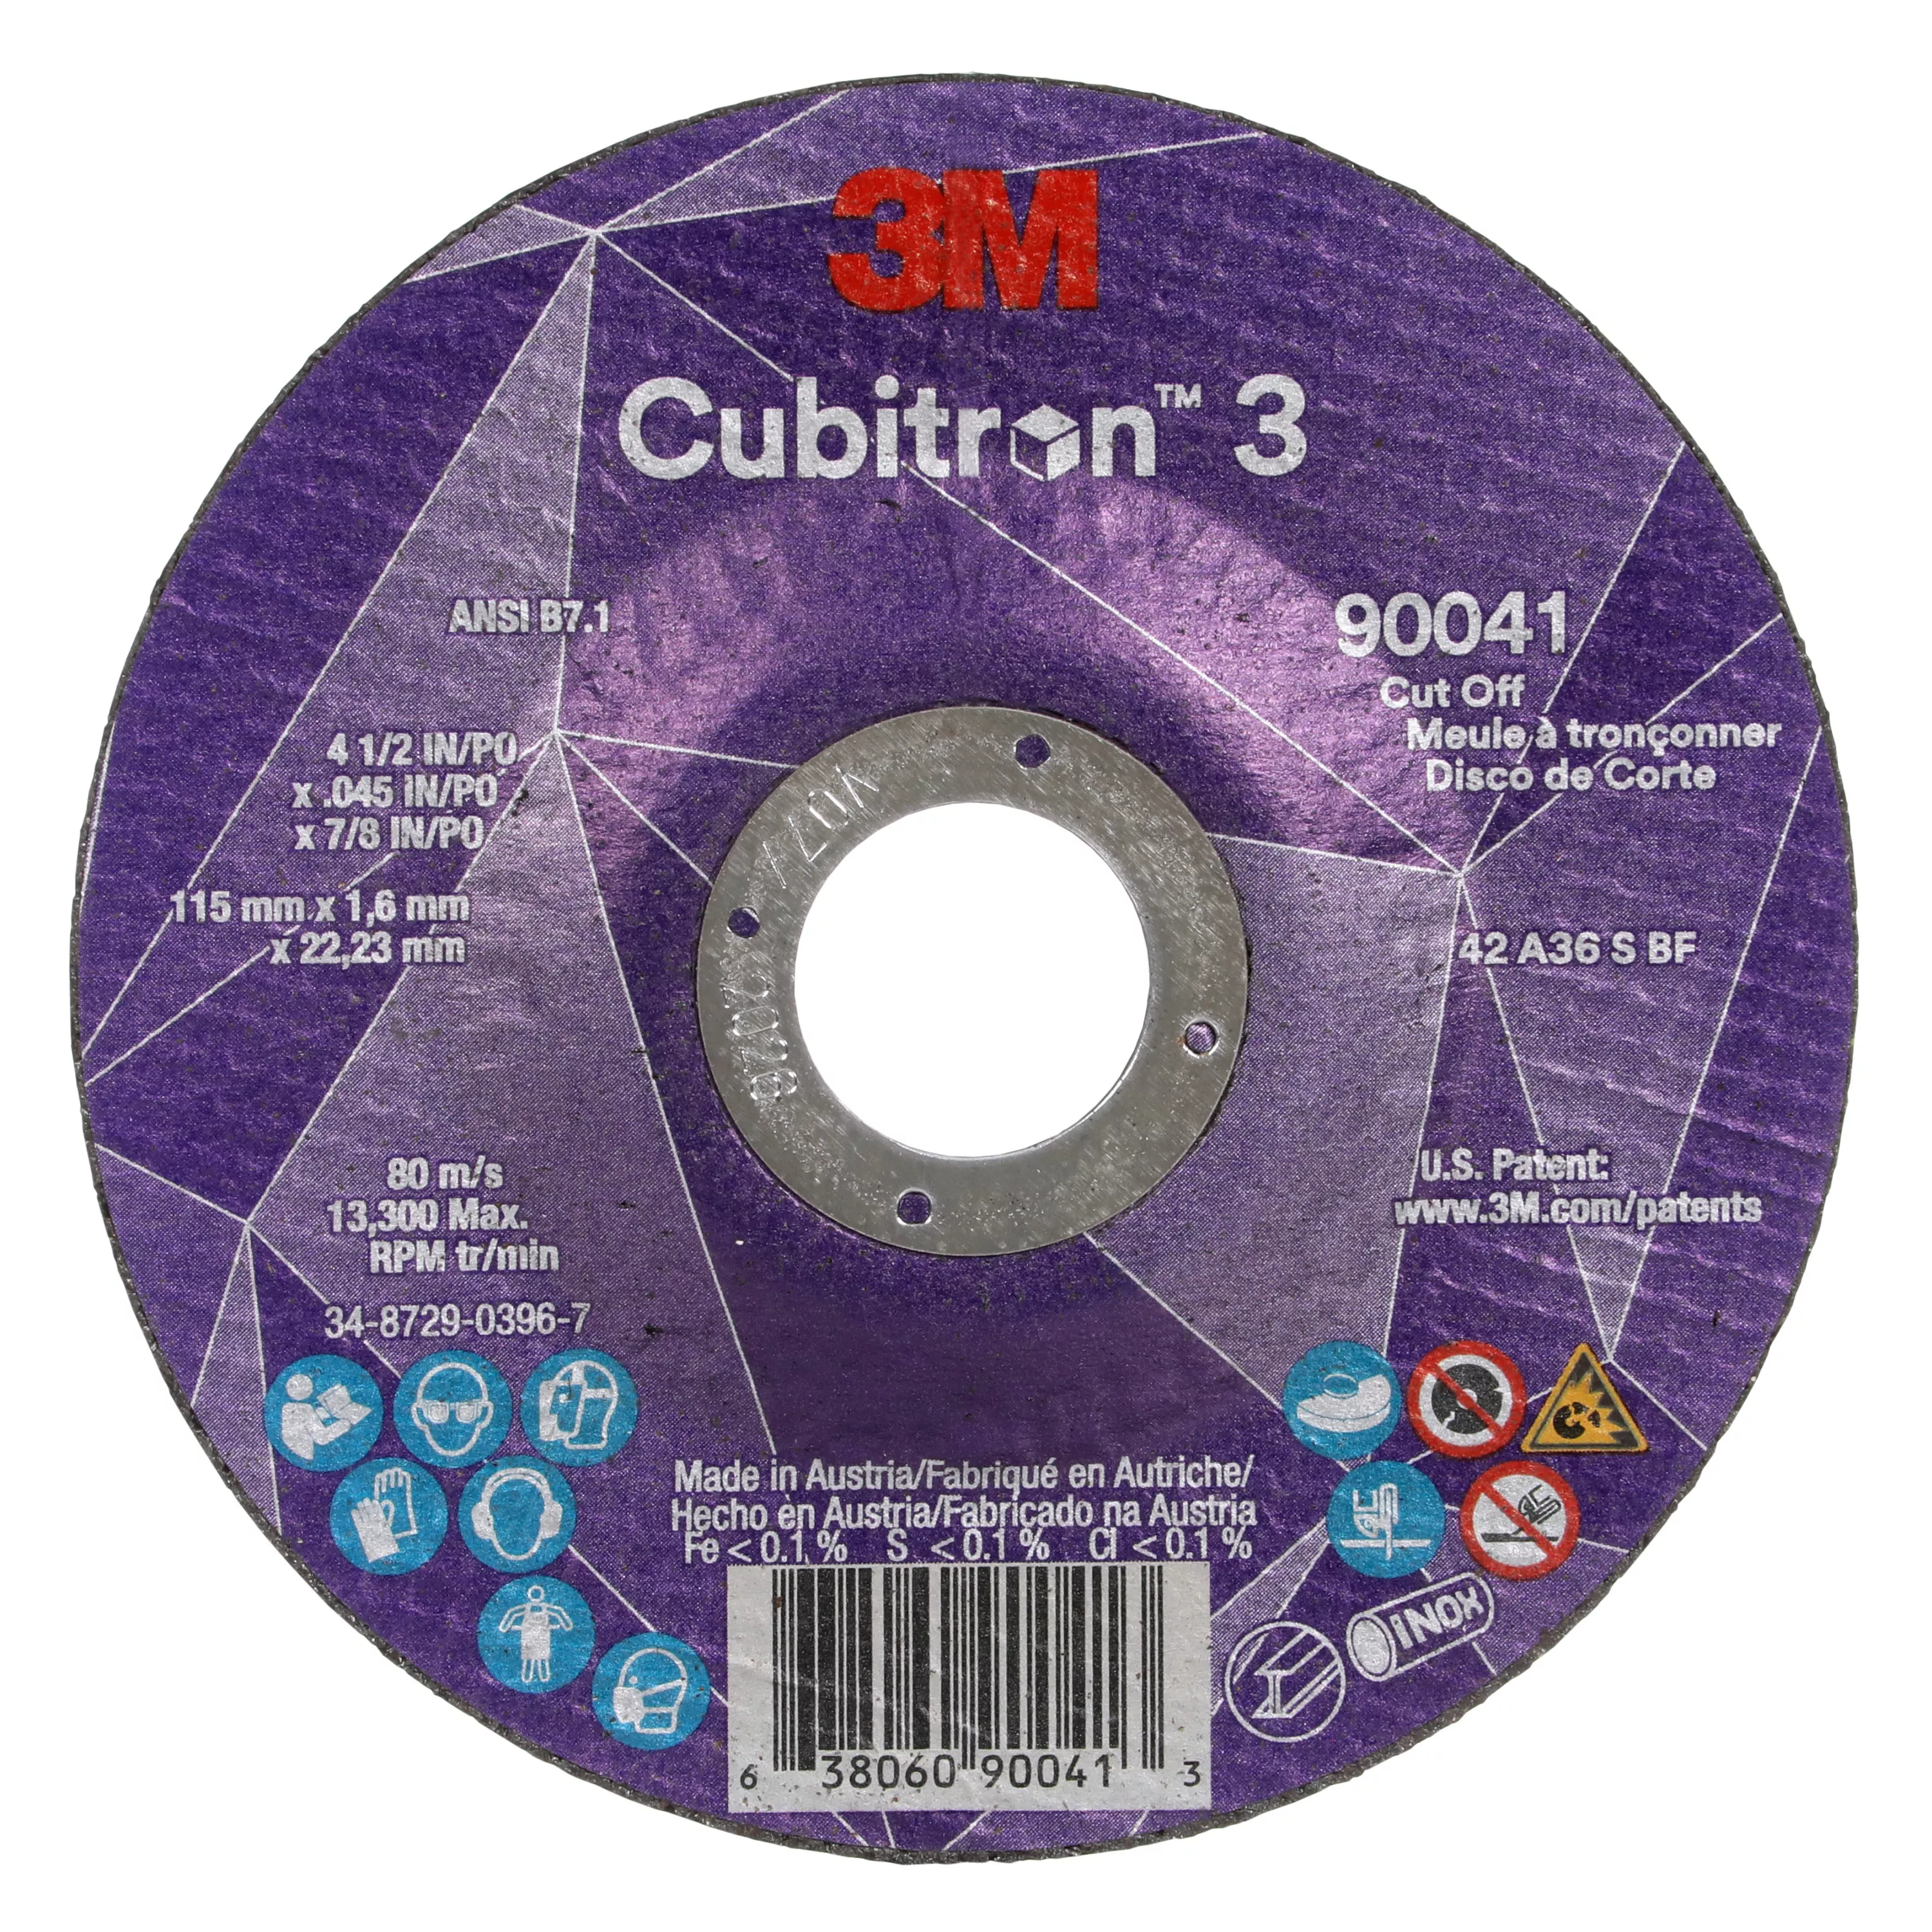 3M™ Cubitron™ 3 Cut-Off Wheel, 90041, 36+, T27, 4-1/2 in x 0.045 in x
7/8 in (115 x 1.6 x 22.23 mm), ANSI, 25/Pack, 50 ea/Case